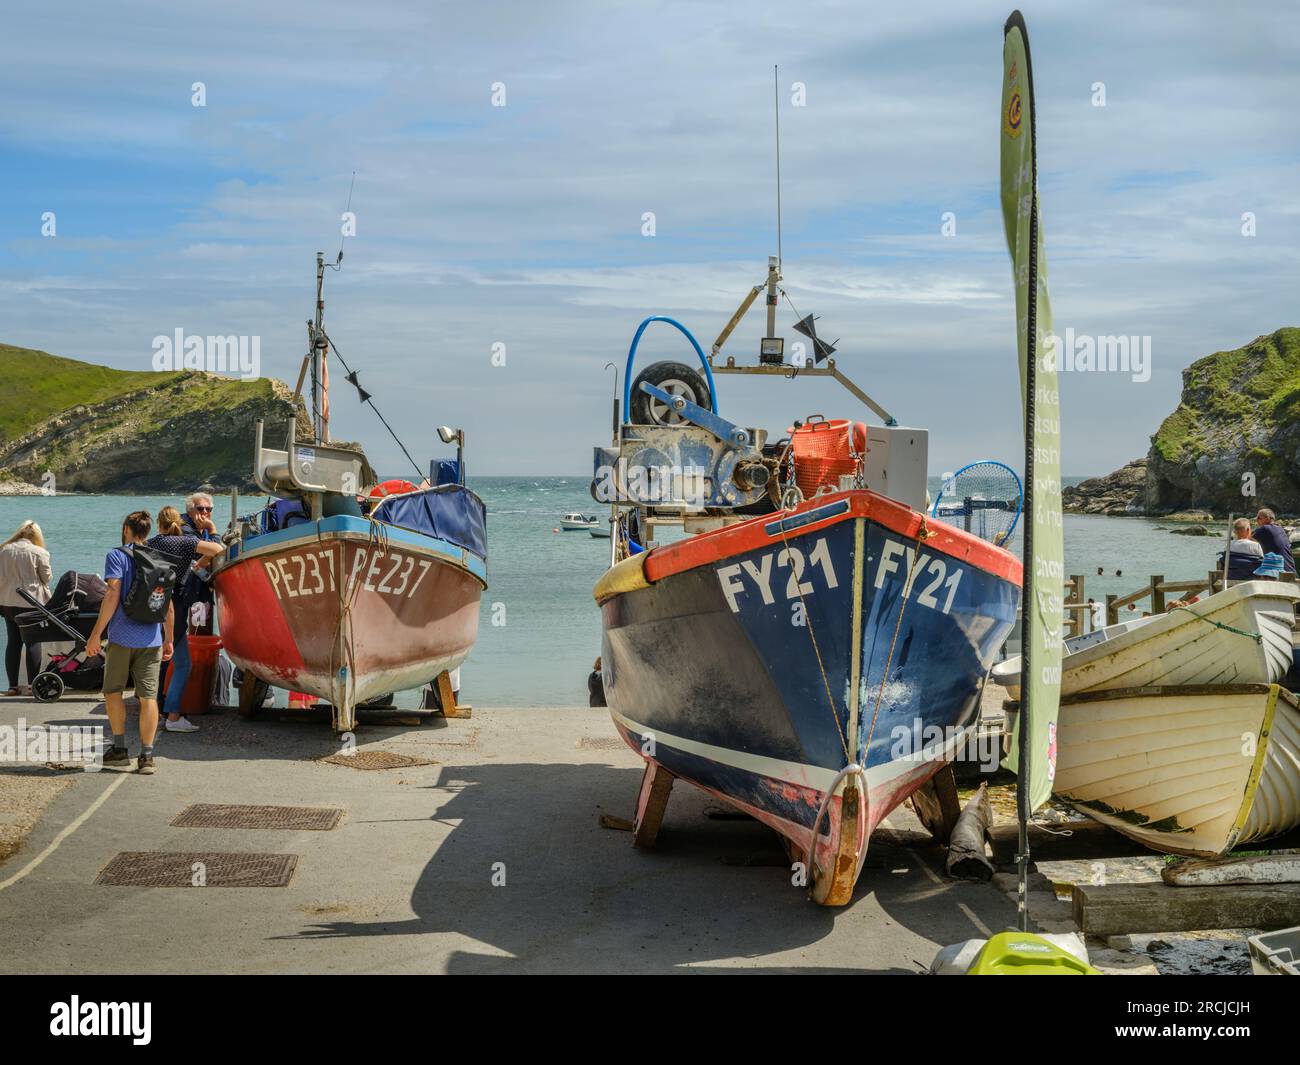 Un jour d'été, les petits bateaux de pêche qui bordent la cale de Lulworth Cove dans le Dorset sont une attraction populaire pour les touristes. Banque D'Images